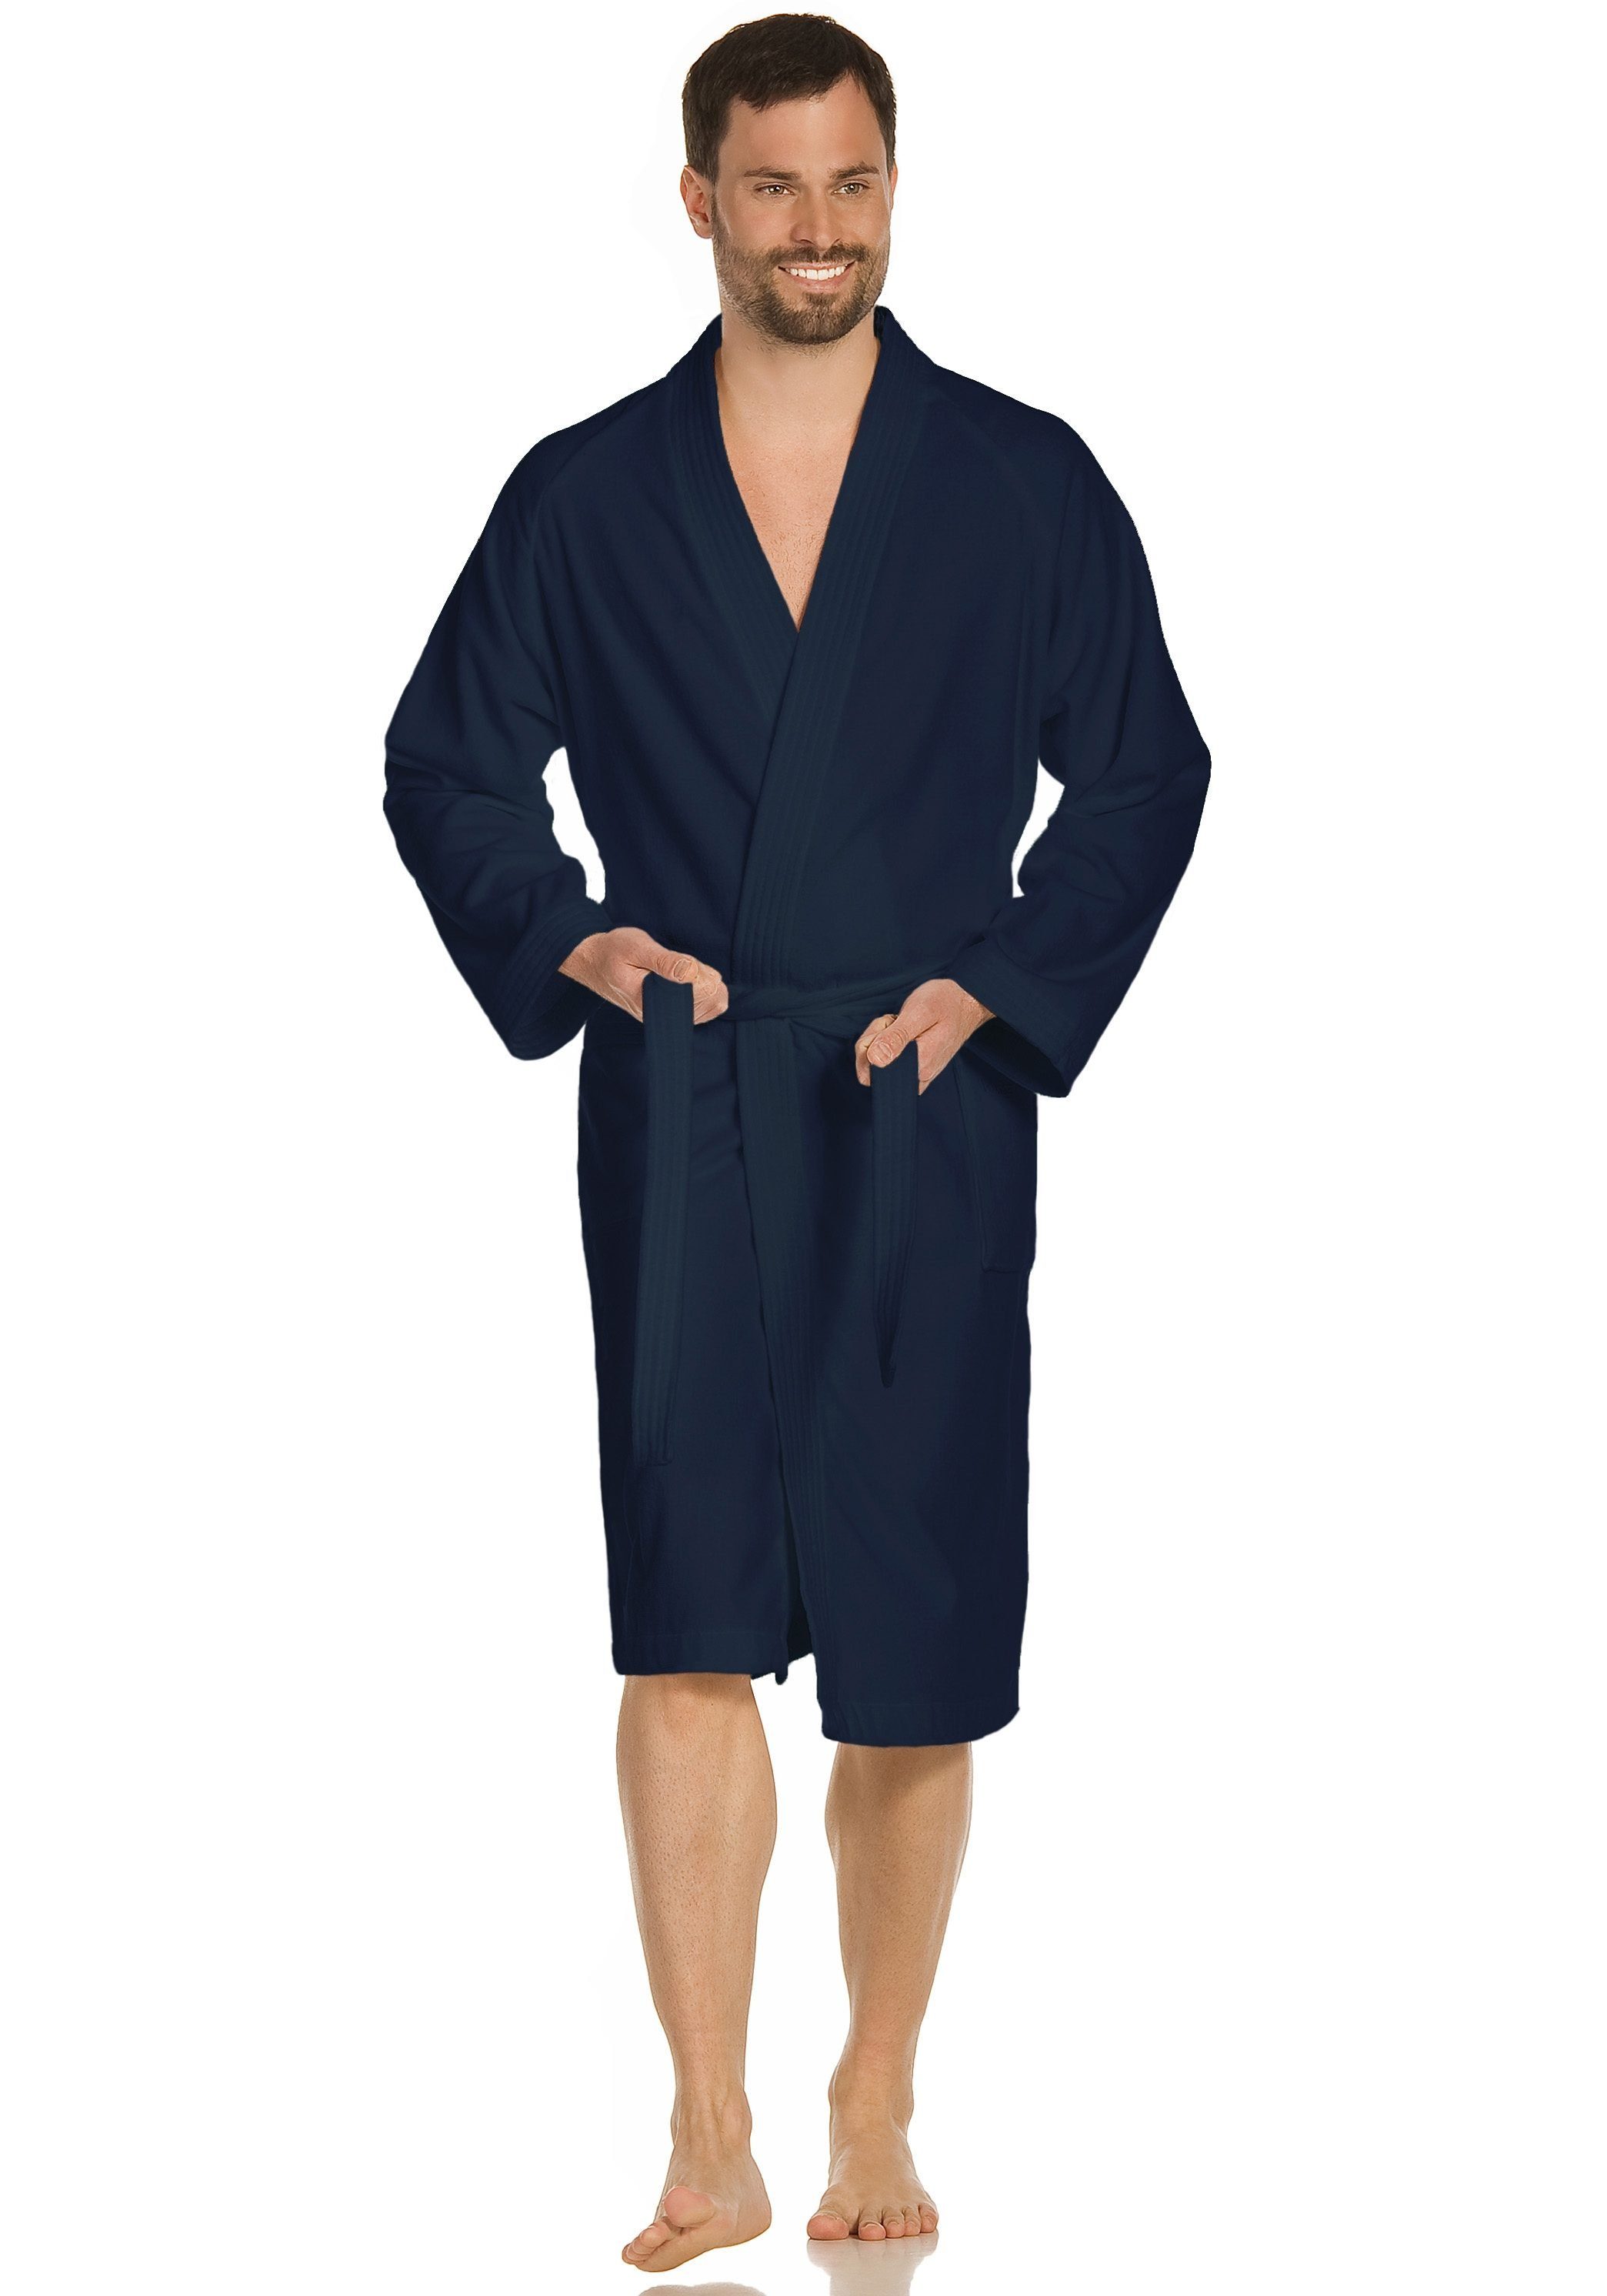 Kimono-Kragen, Baumwolle, Damen Dallas, & Kurzform, Unisex-Bademantel mit Herren, Webvelours, Vossen für Gürtel, reine Kimono-Kragen dunkelblau